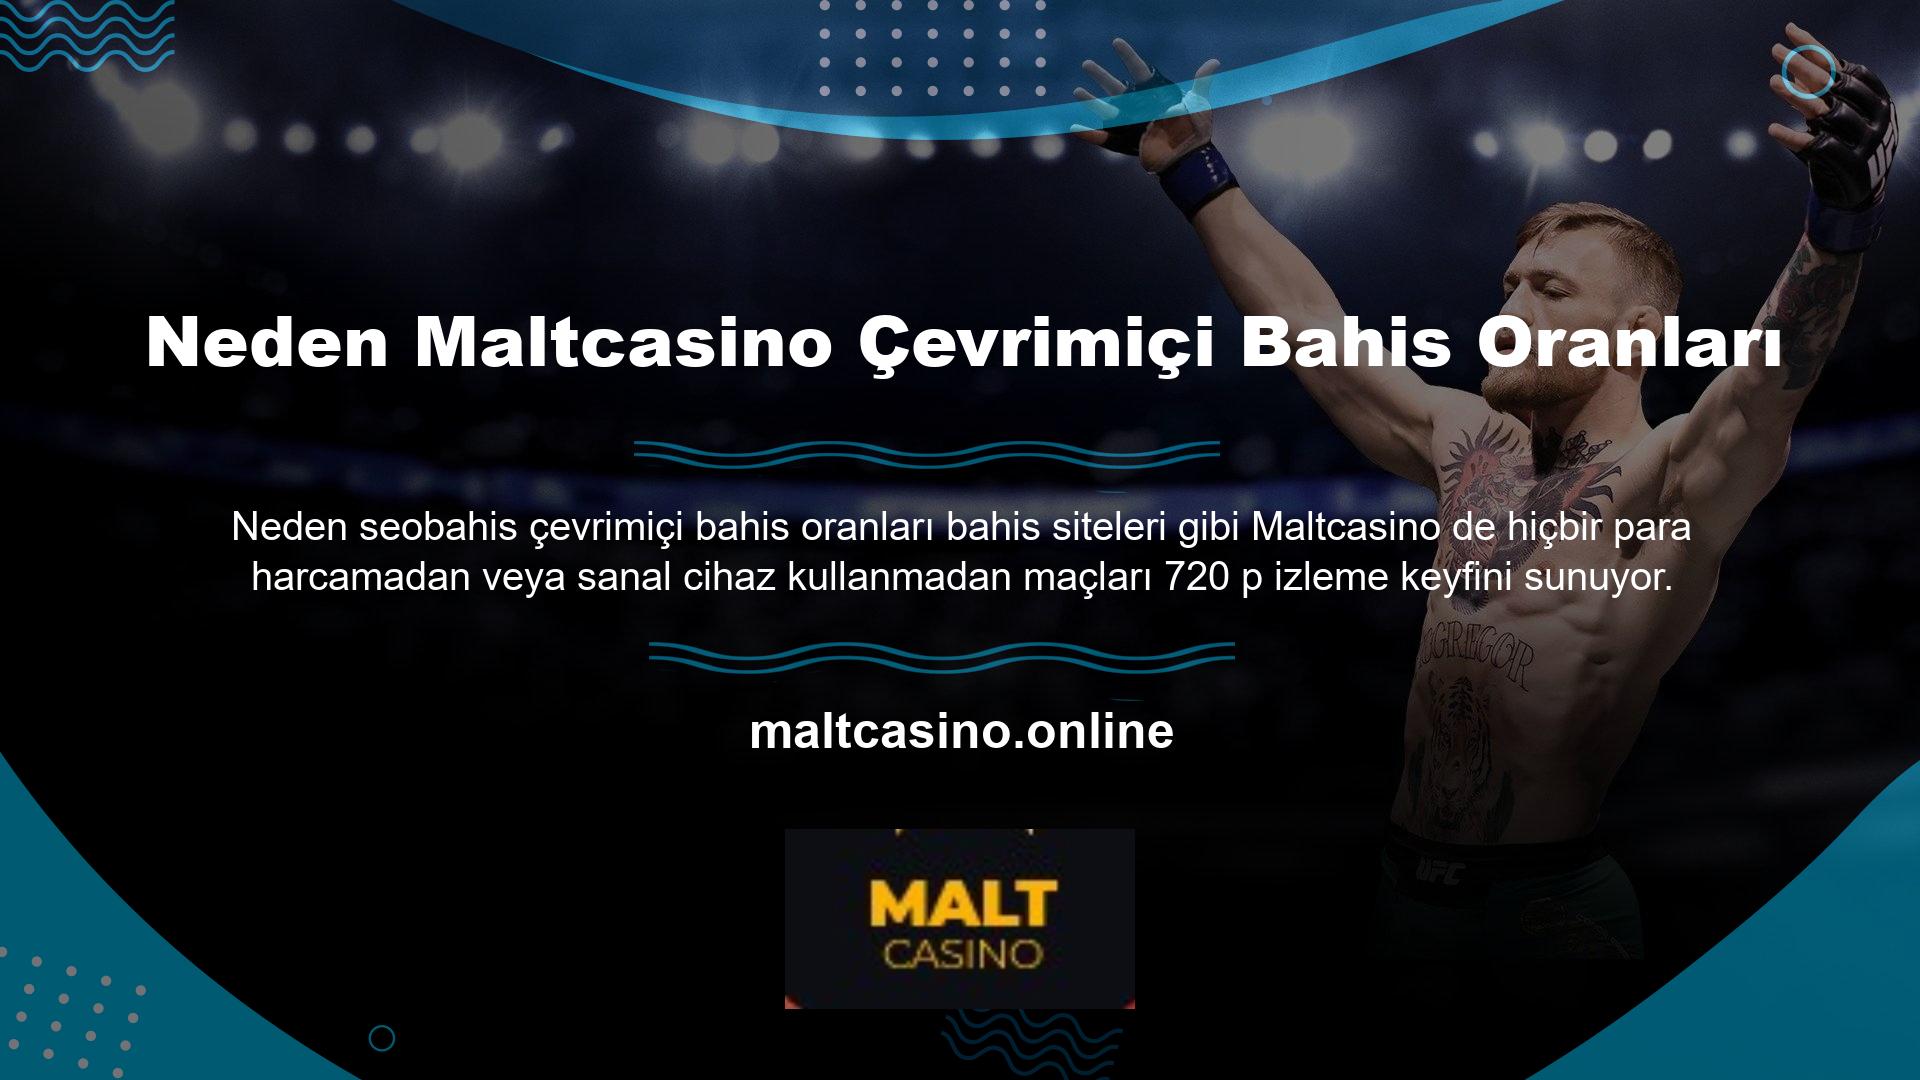 Neden Maltcasino seçtiniz? Maltcasino Online, kazanmakta zorlanan taraftarlara yardımcı olmak için kafa kafaya maçları anında canlı yayınladı